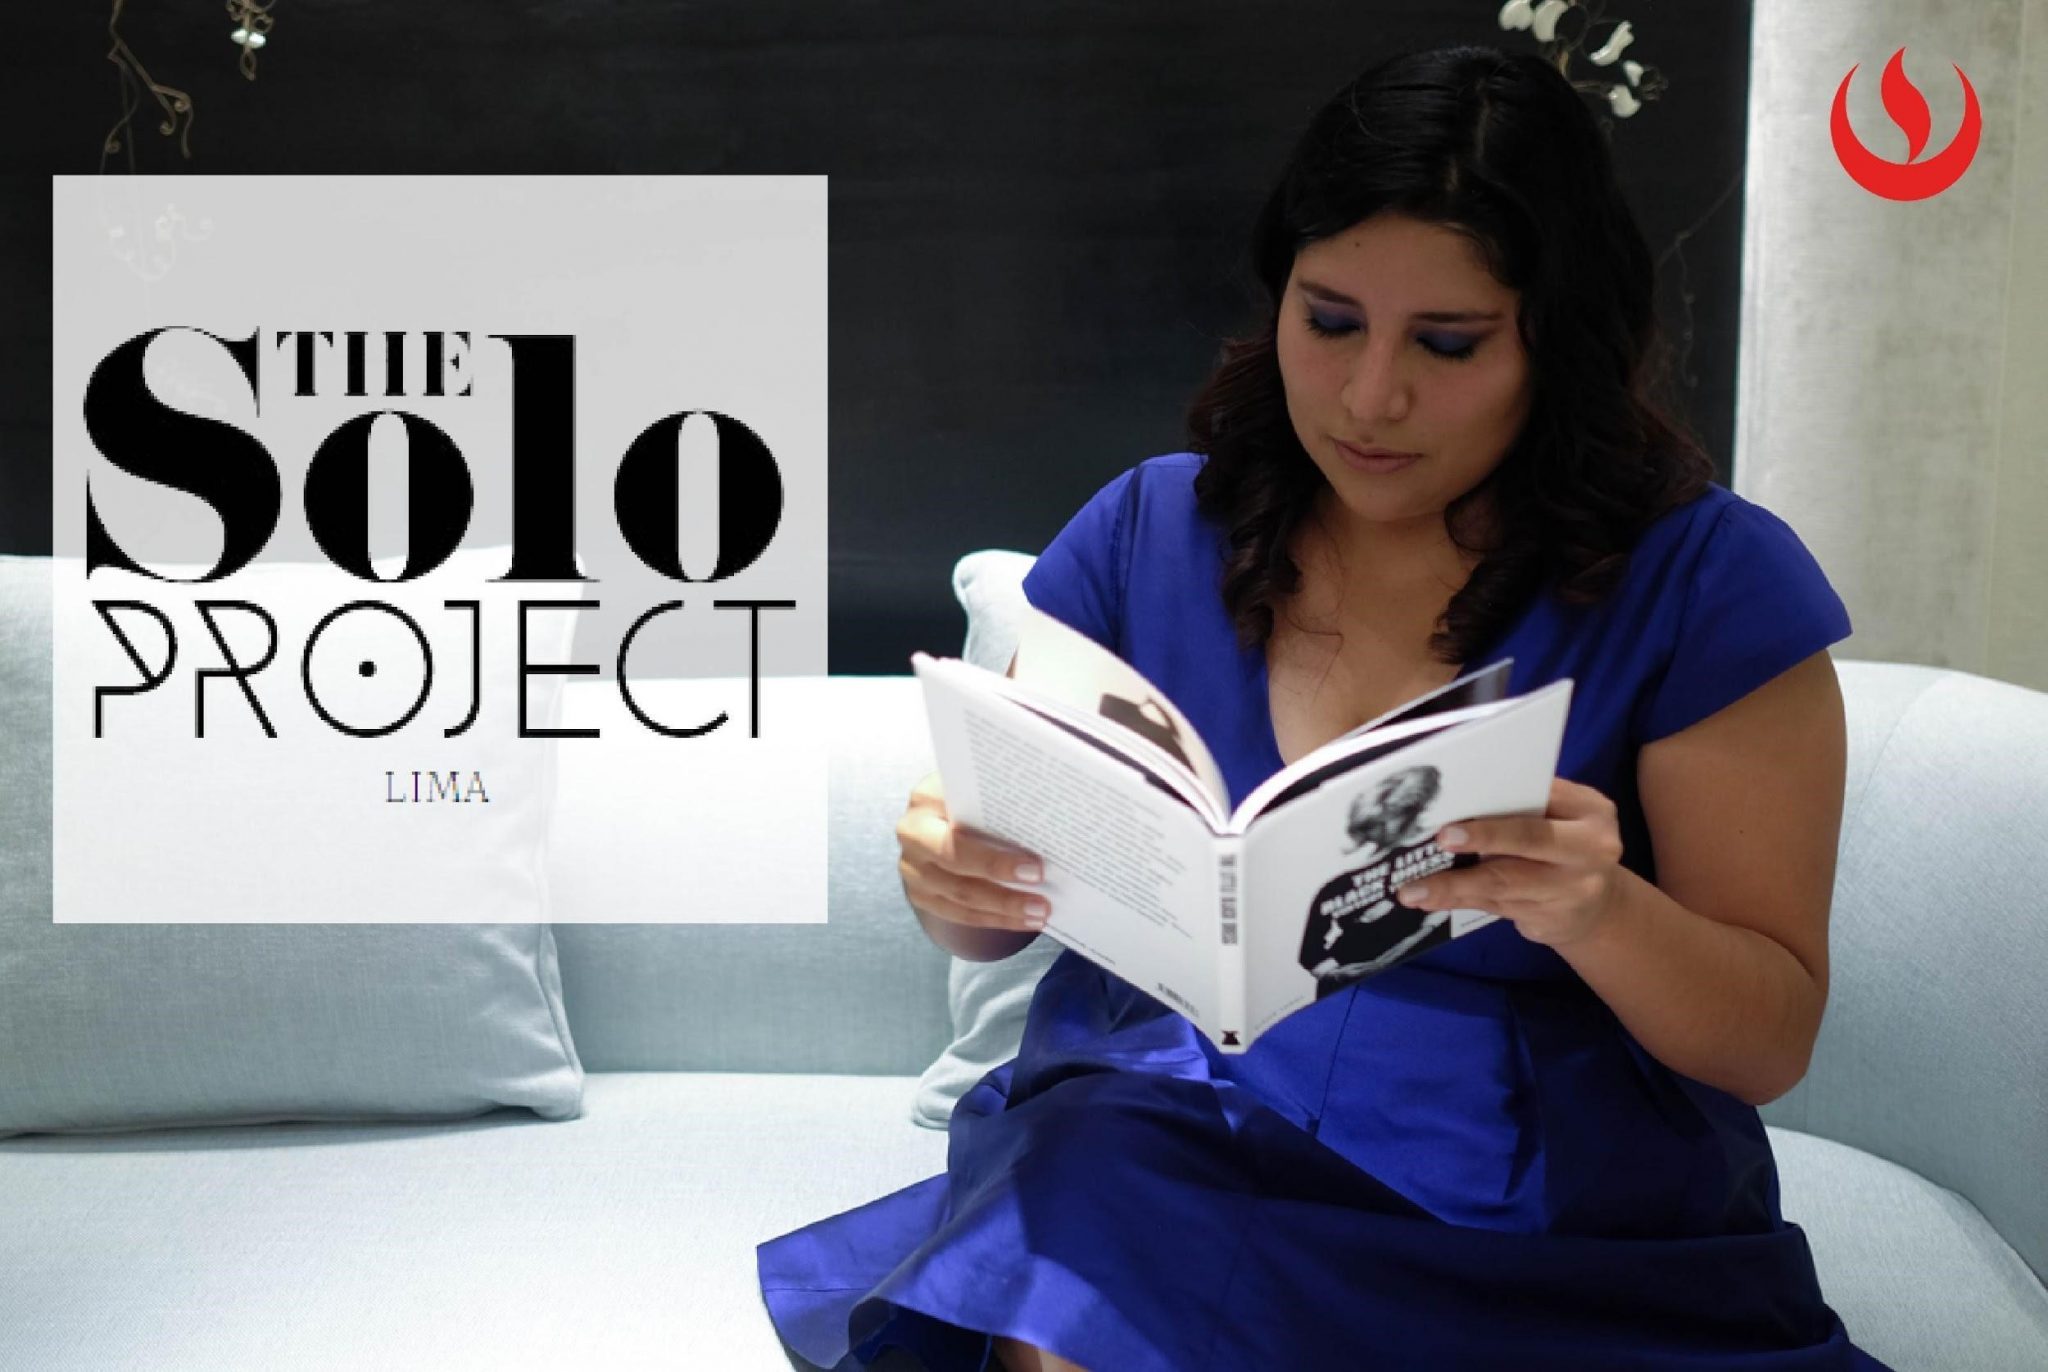 Carla Atencio, "The Solo Project"